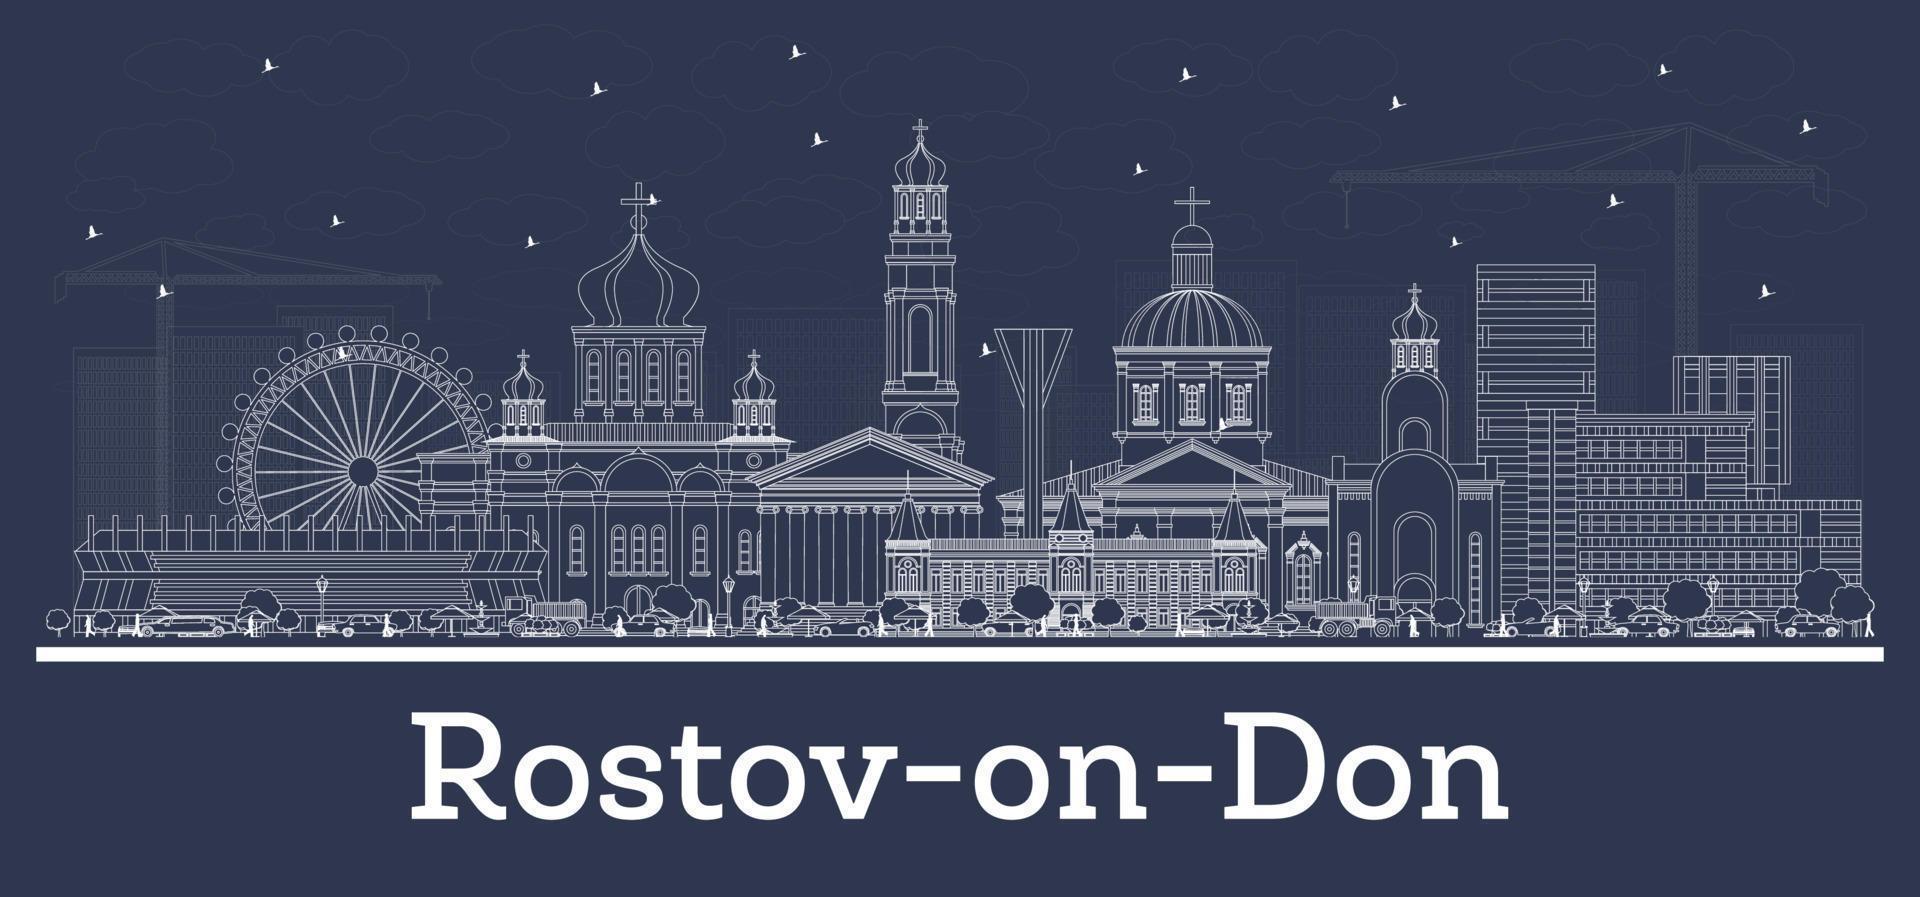 delinear el horizonte de la ciudad de rostov-on-don rusia con edificios blancos. vector